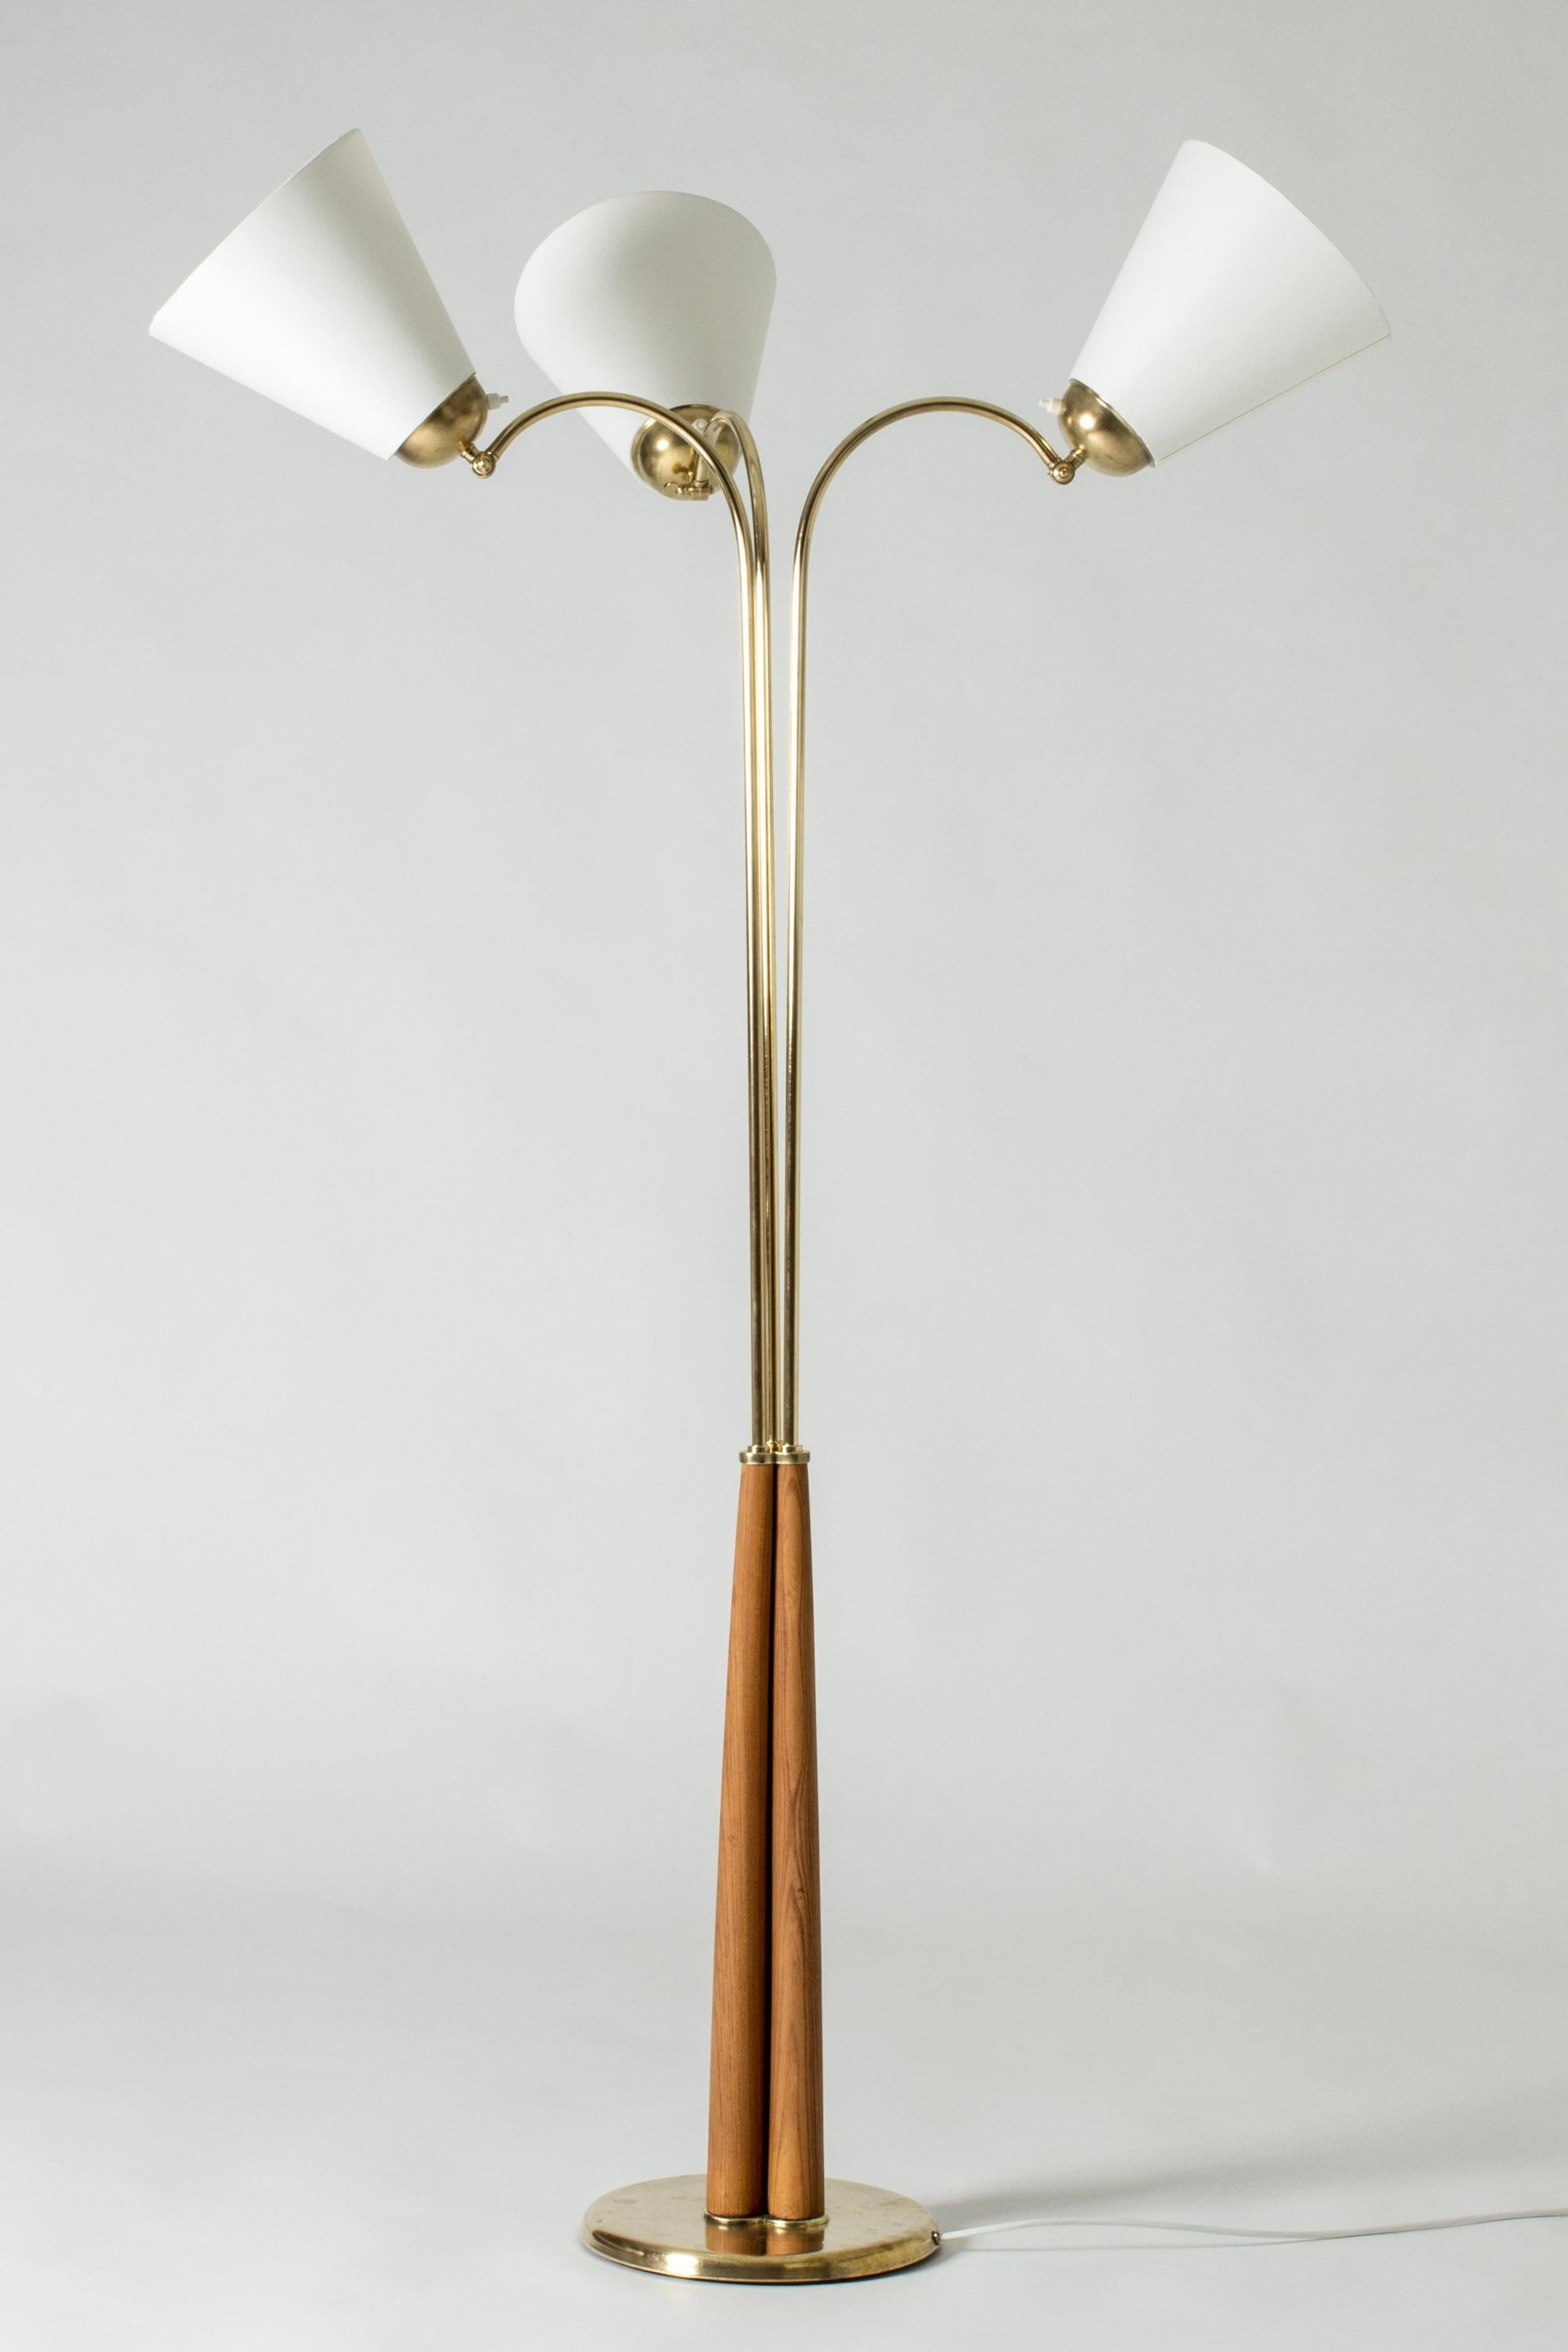 Elegant lampadaire moderne suédois, en laiton, avec trois abat-jour. Base effilée en bois avec un beau grain de bois. La direction des abat-jour peut être ajustée.